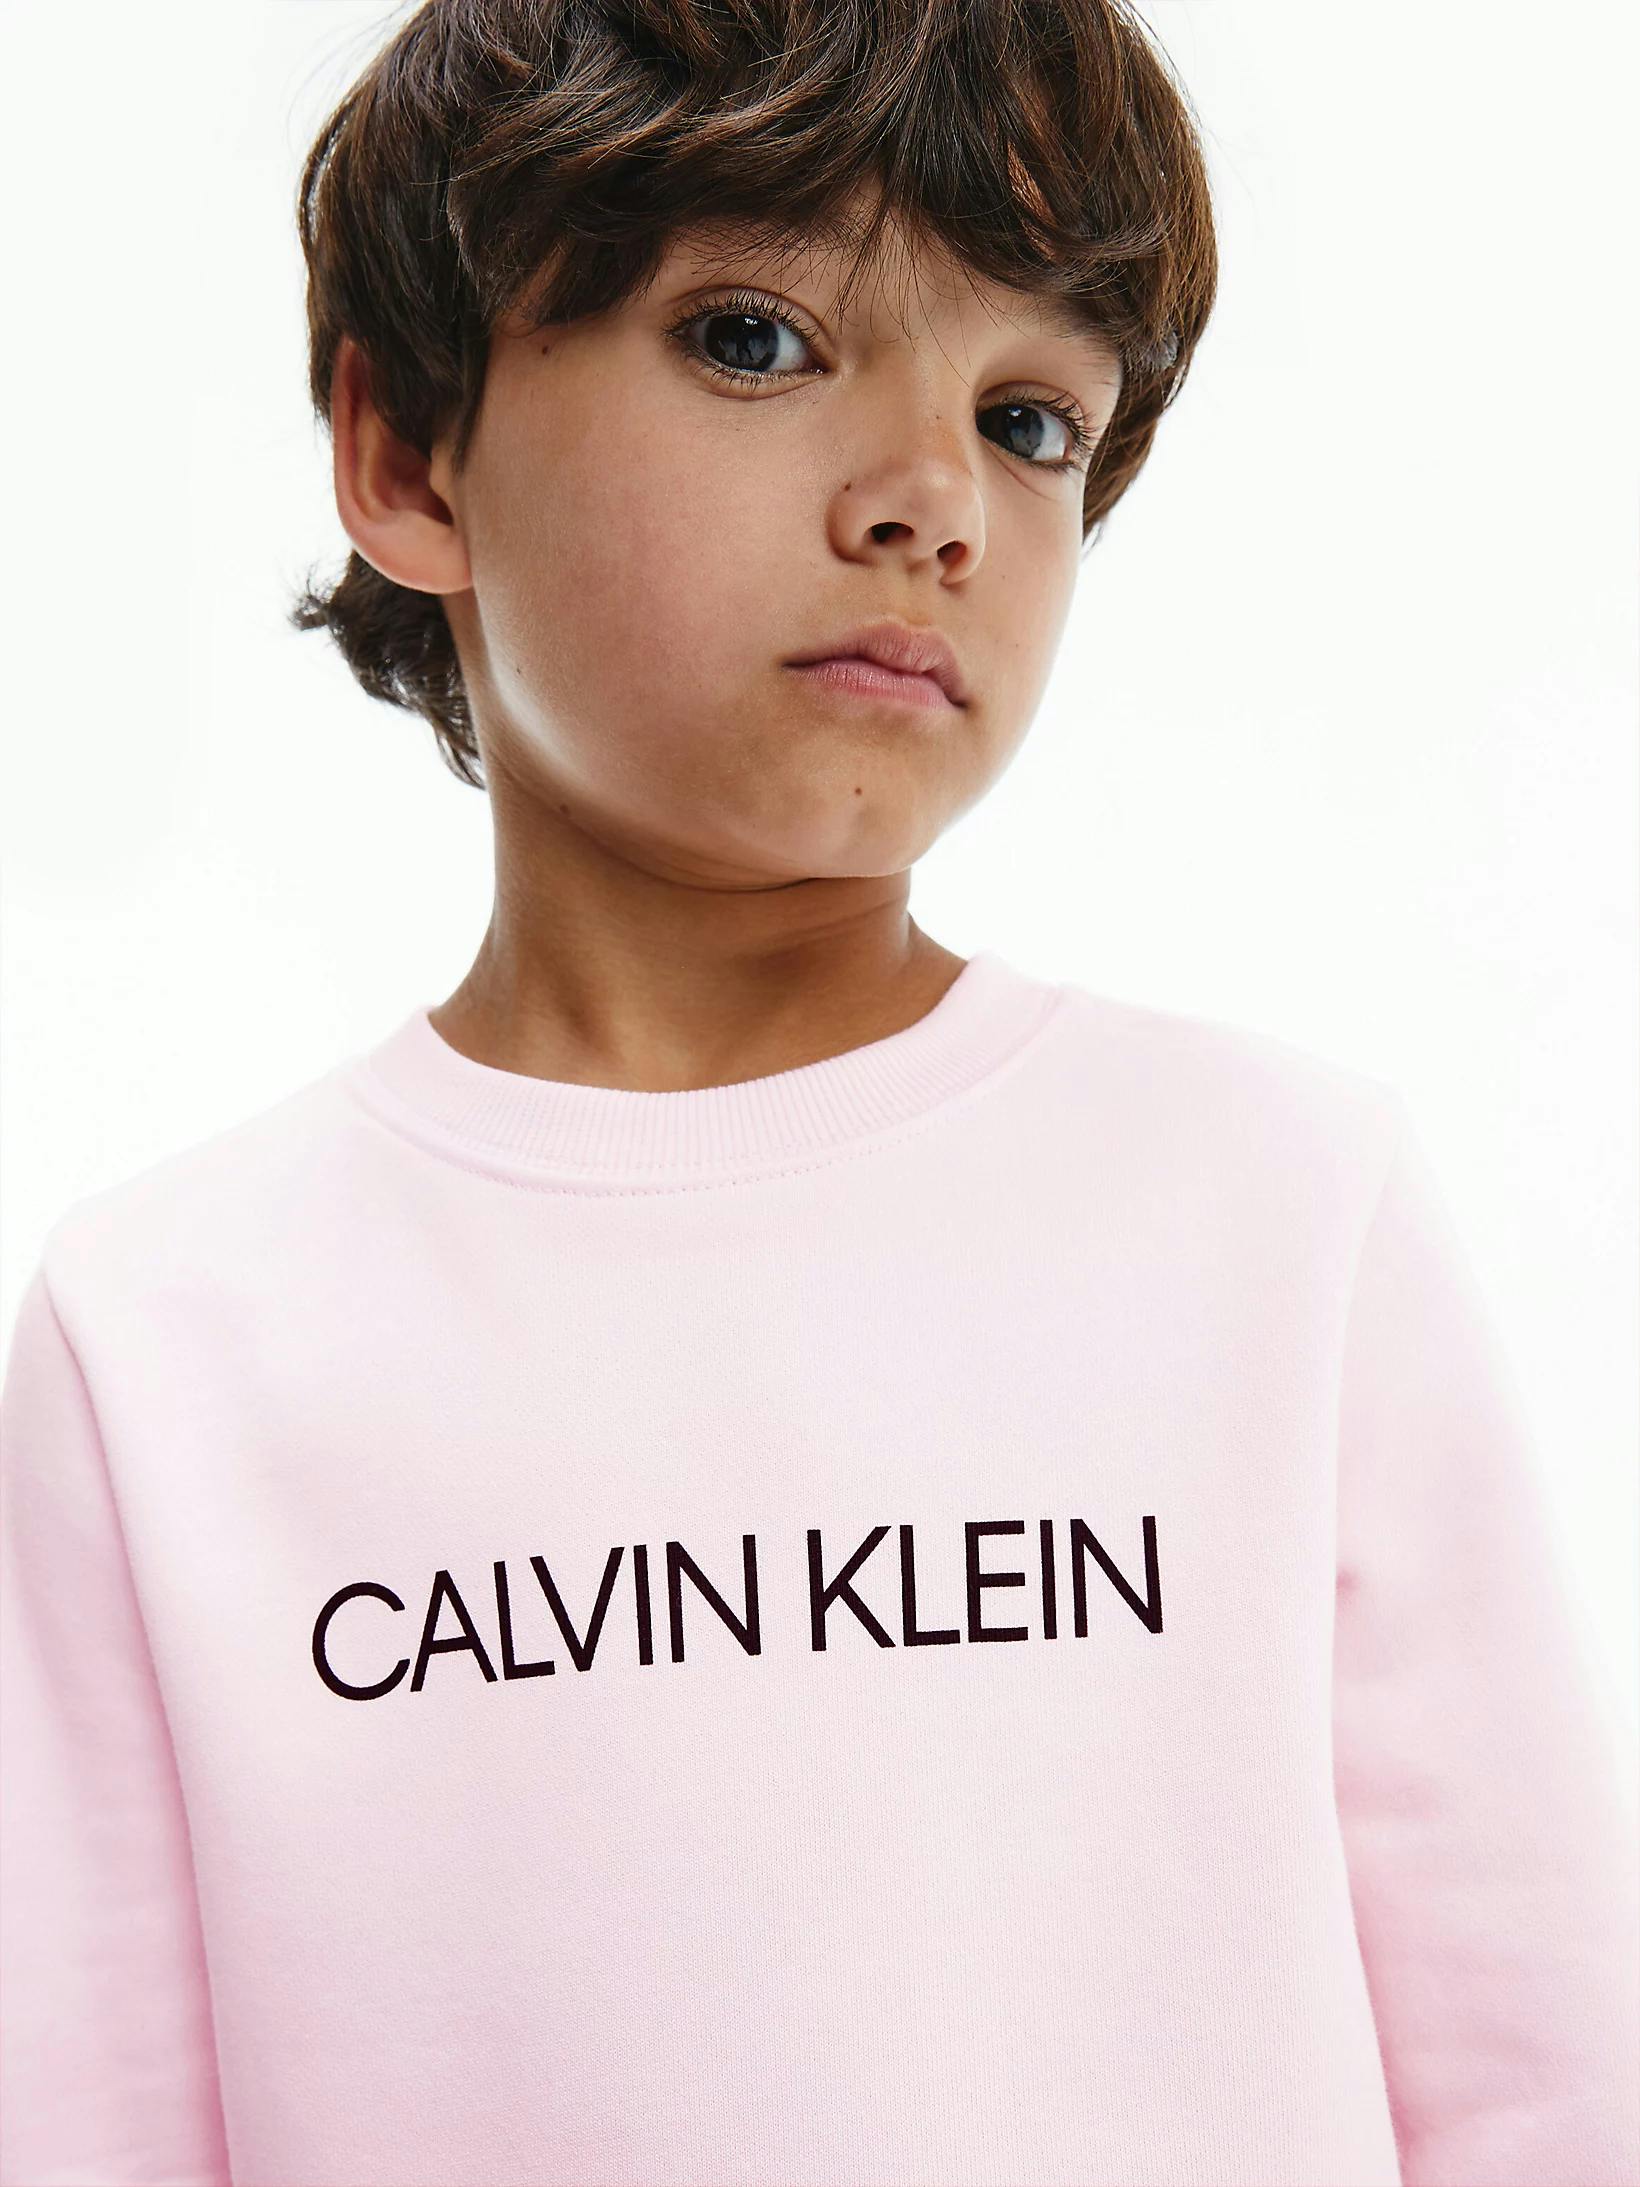 Kidz Management for Calvin Klein - Olivier publication photo #1